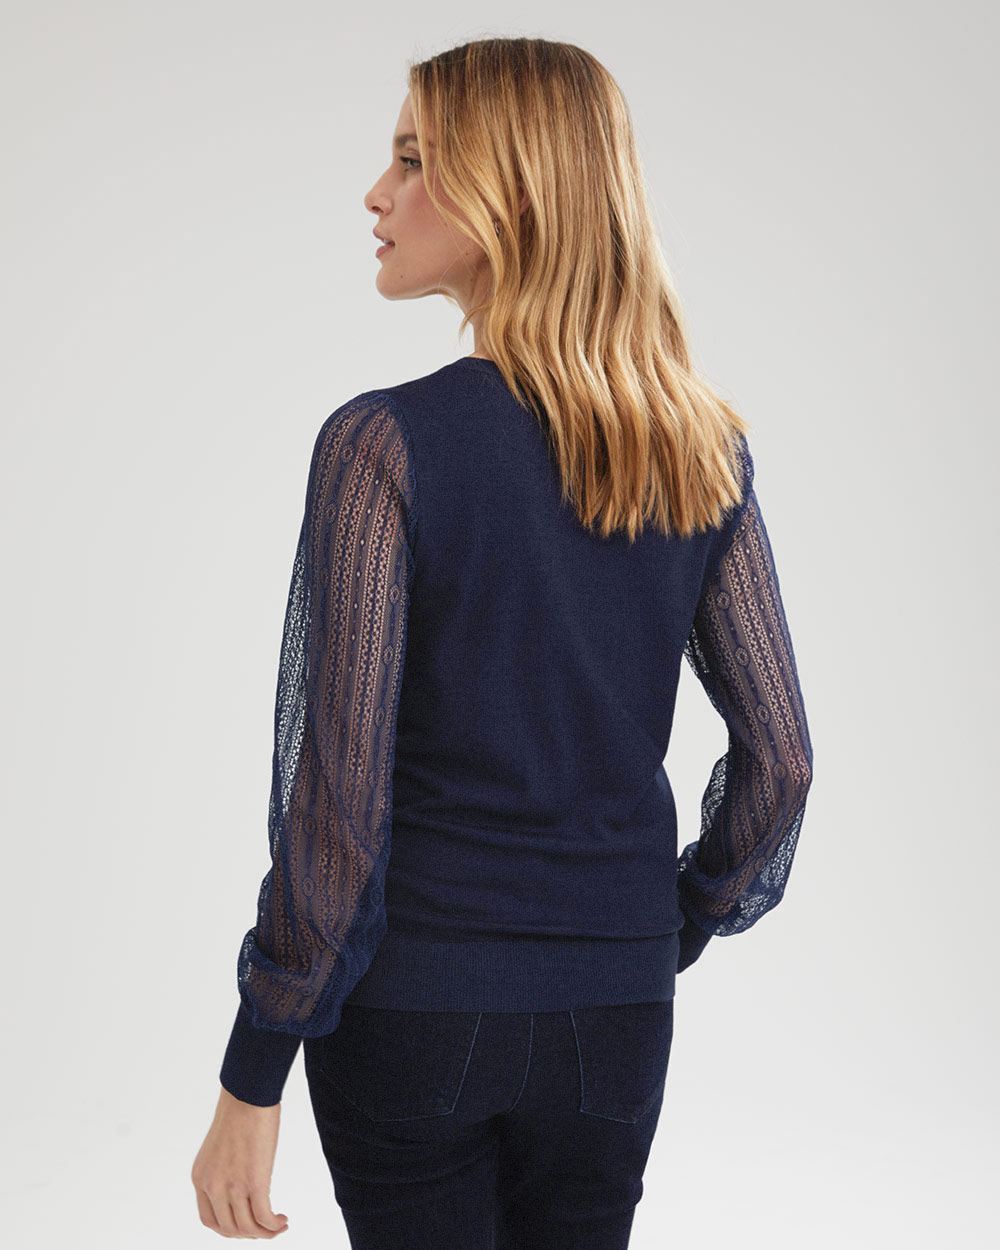 Women's Lace Sweaters